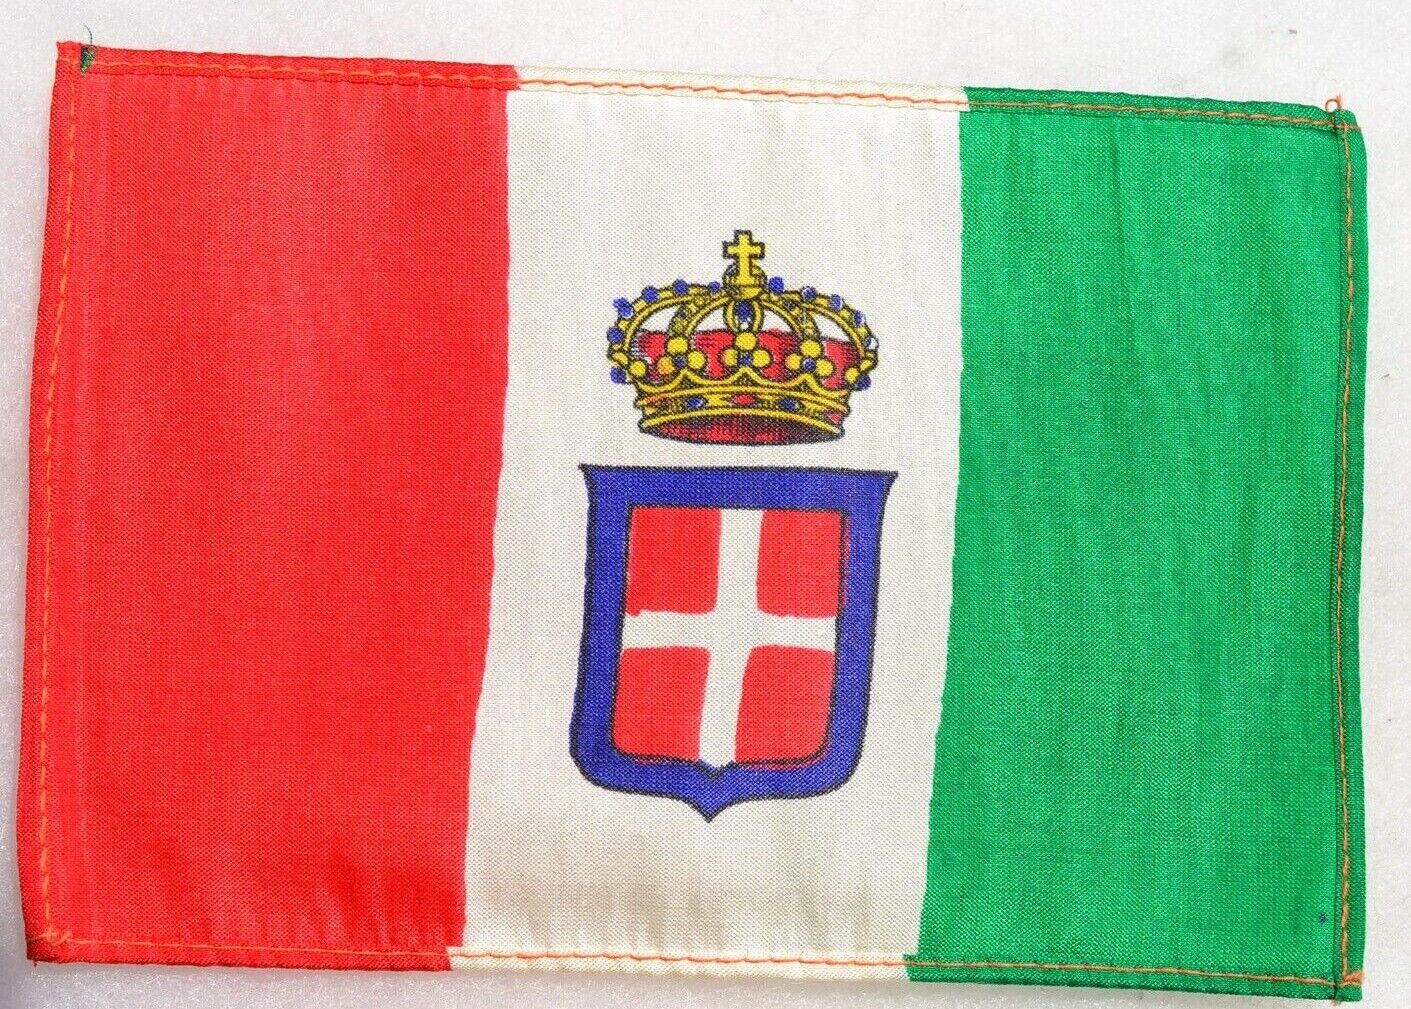 ITALIAN WW 2 REGIO ESERCITO ITALY ROYAL ARMY FLAG SAVOIA FAMILY KING SHIELD